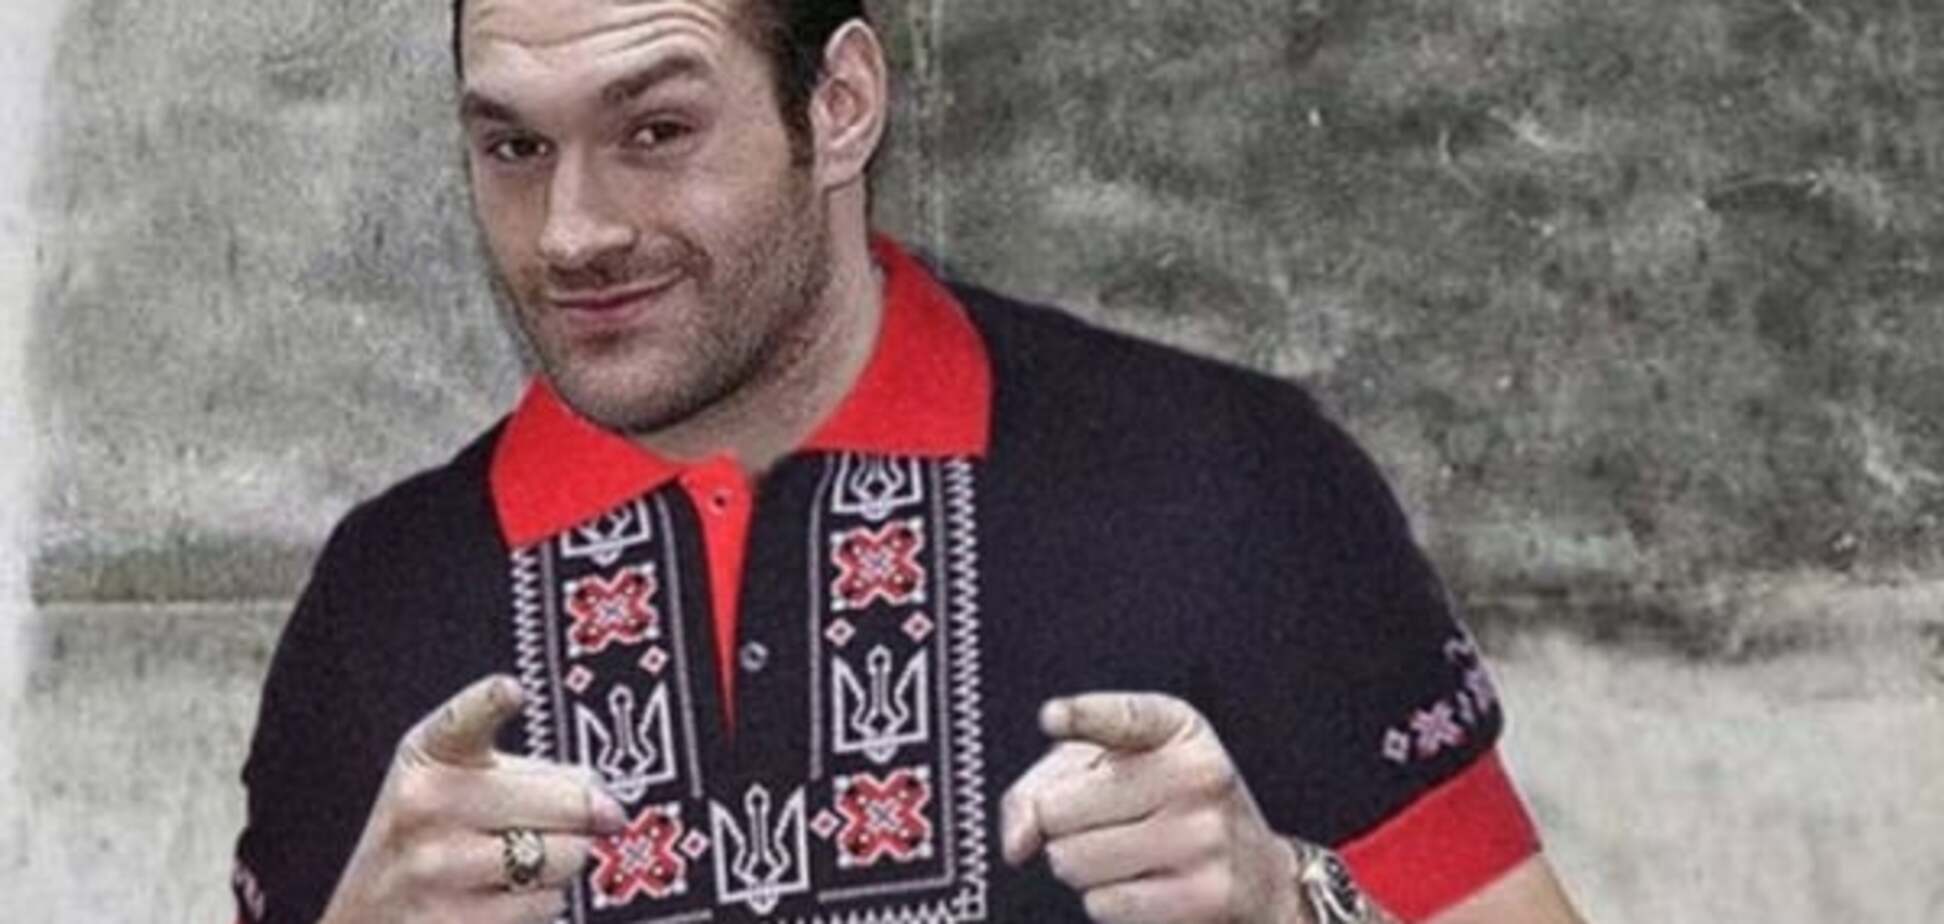 Фото дня: грозный Тайсон одел украинскую вышиванку 'Героям Слава'